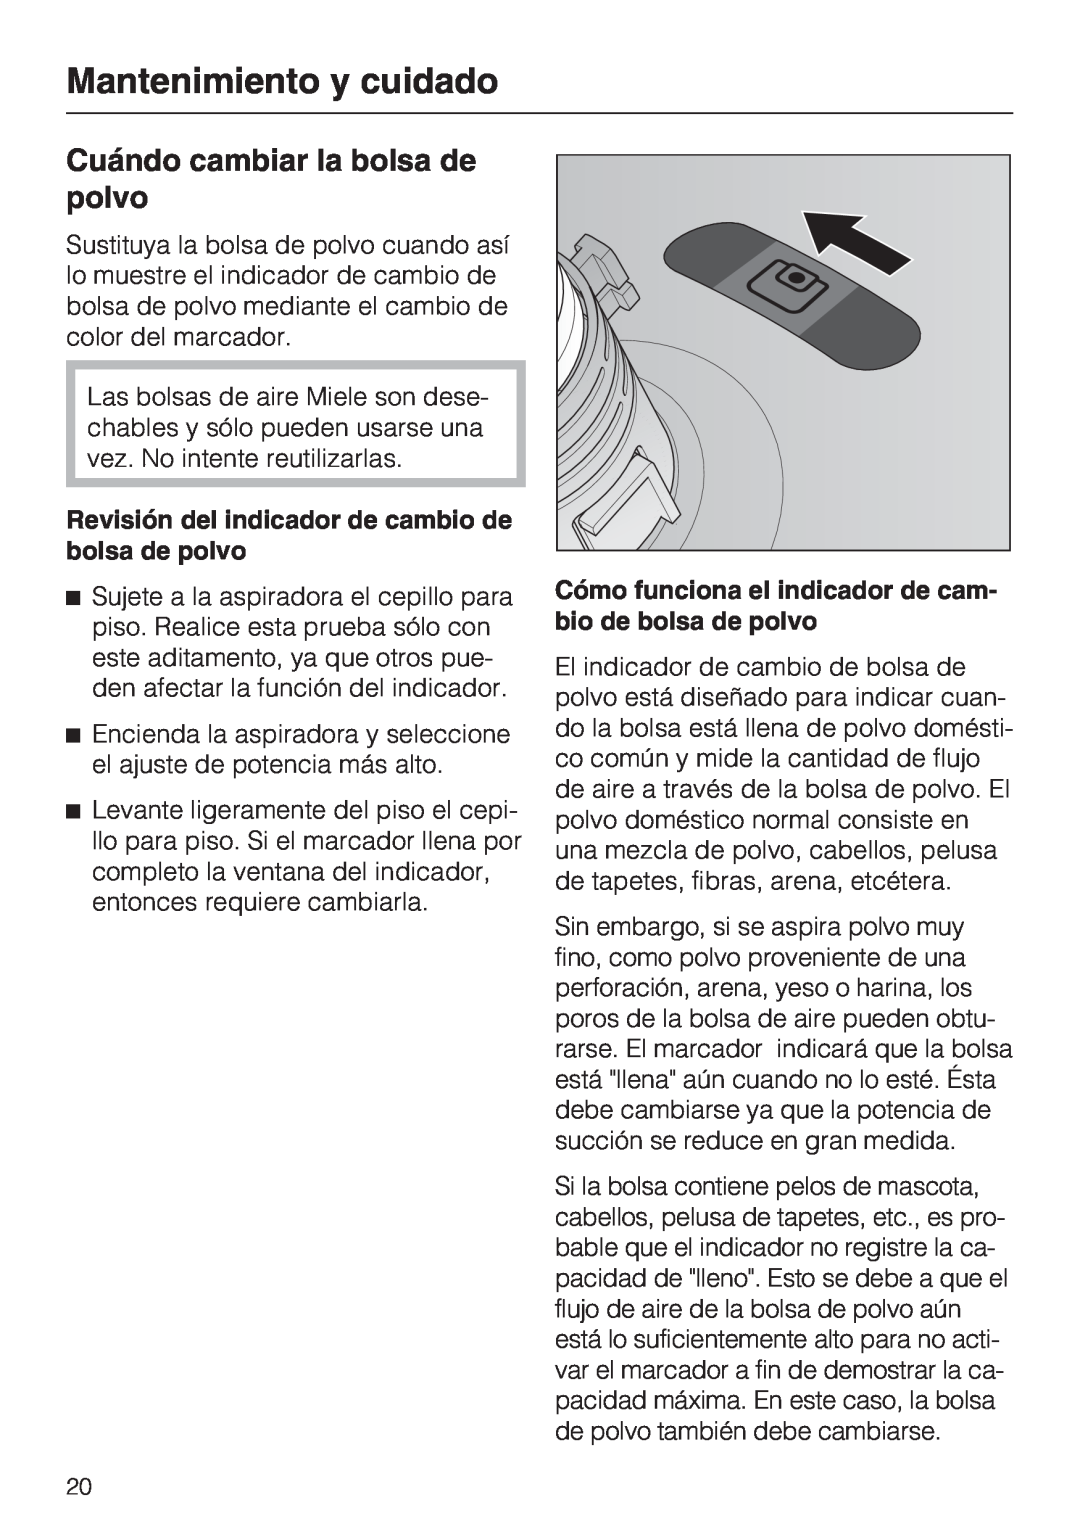 Miele S 2001 manual Cuándo cambiar la bolsa de polvo, Mantenimiento y cuidado 